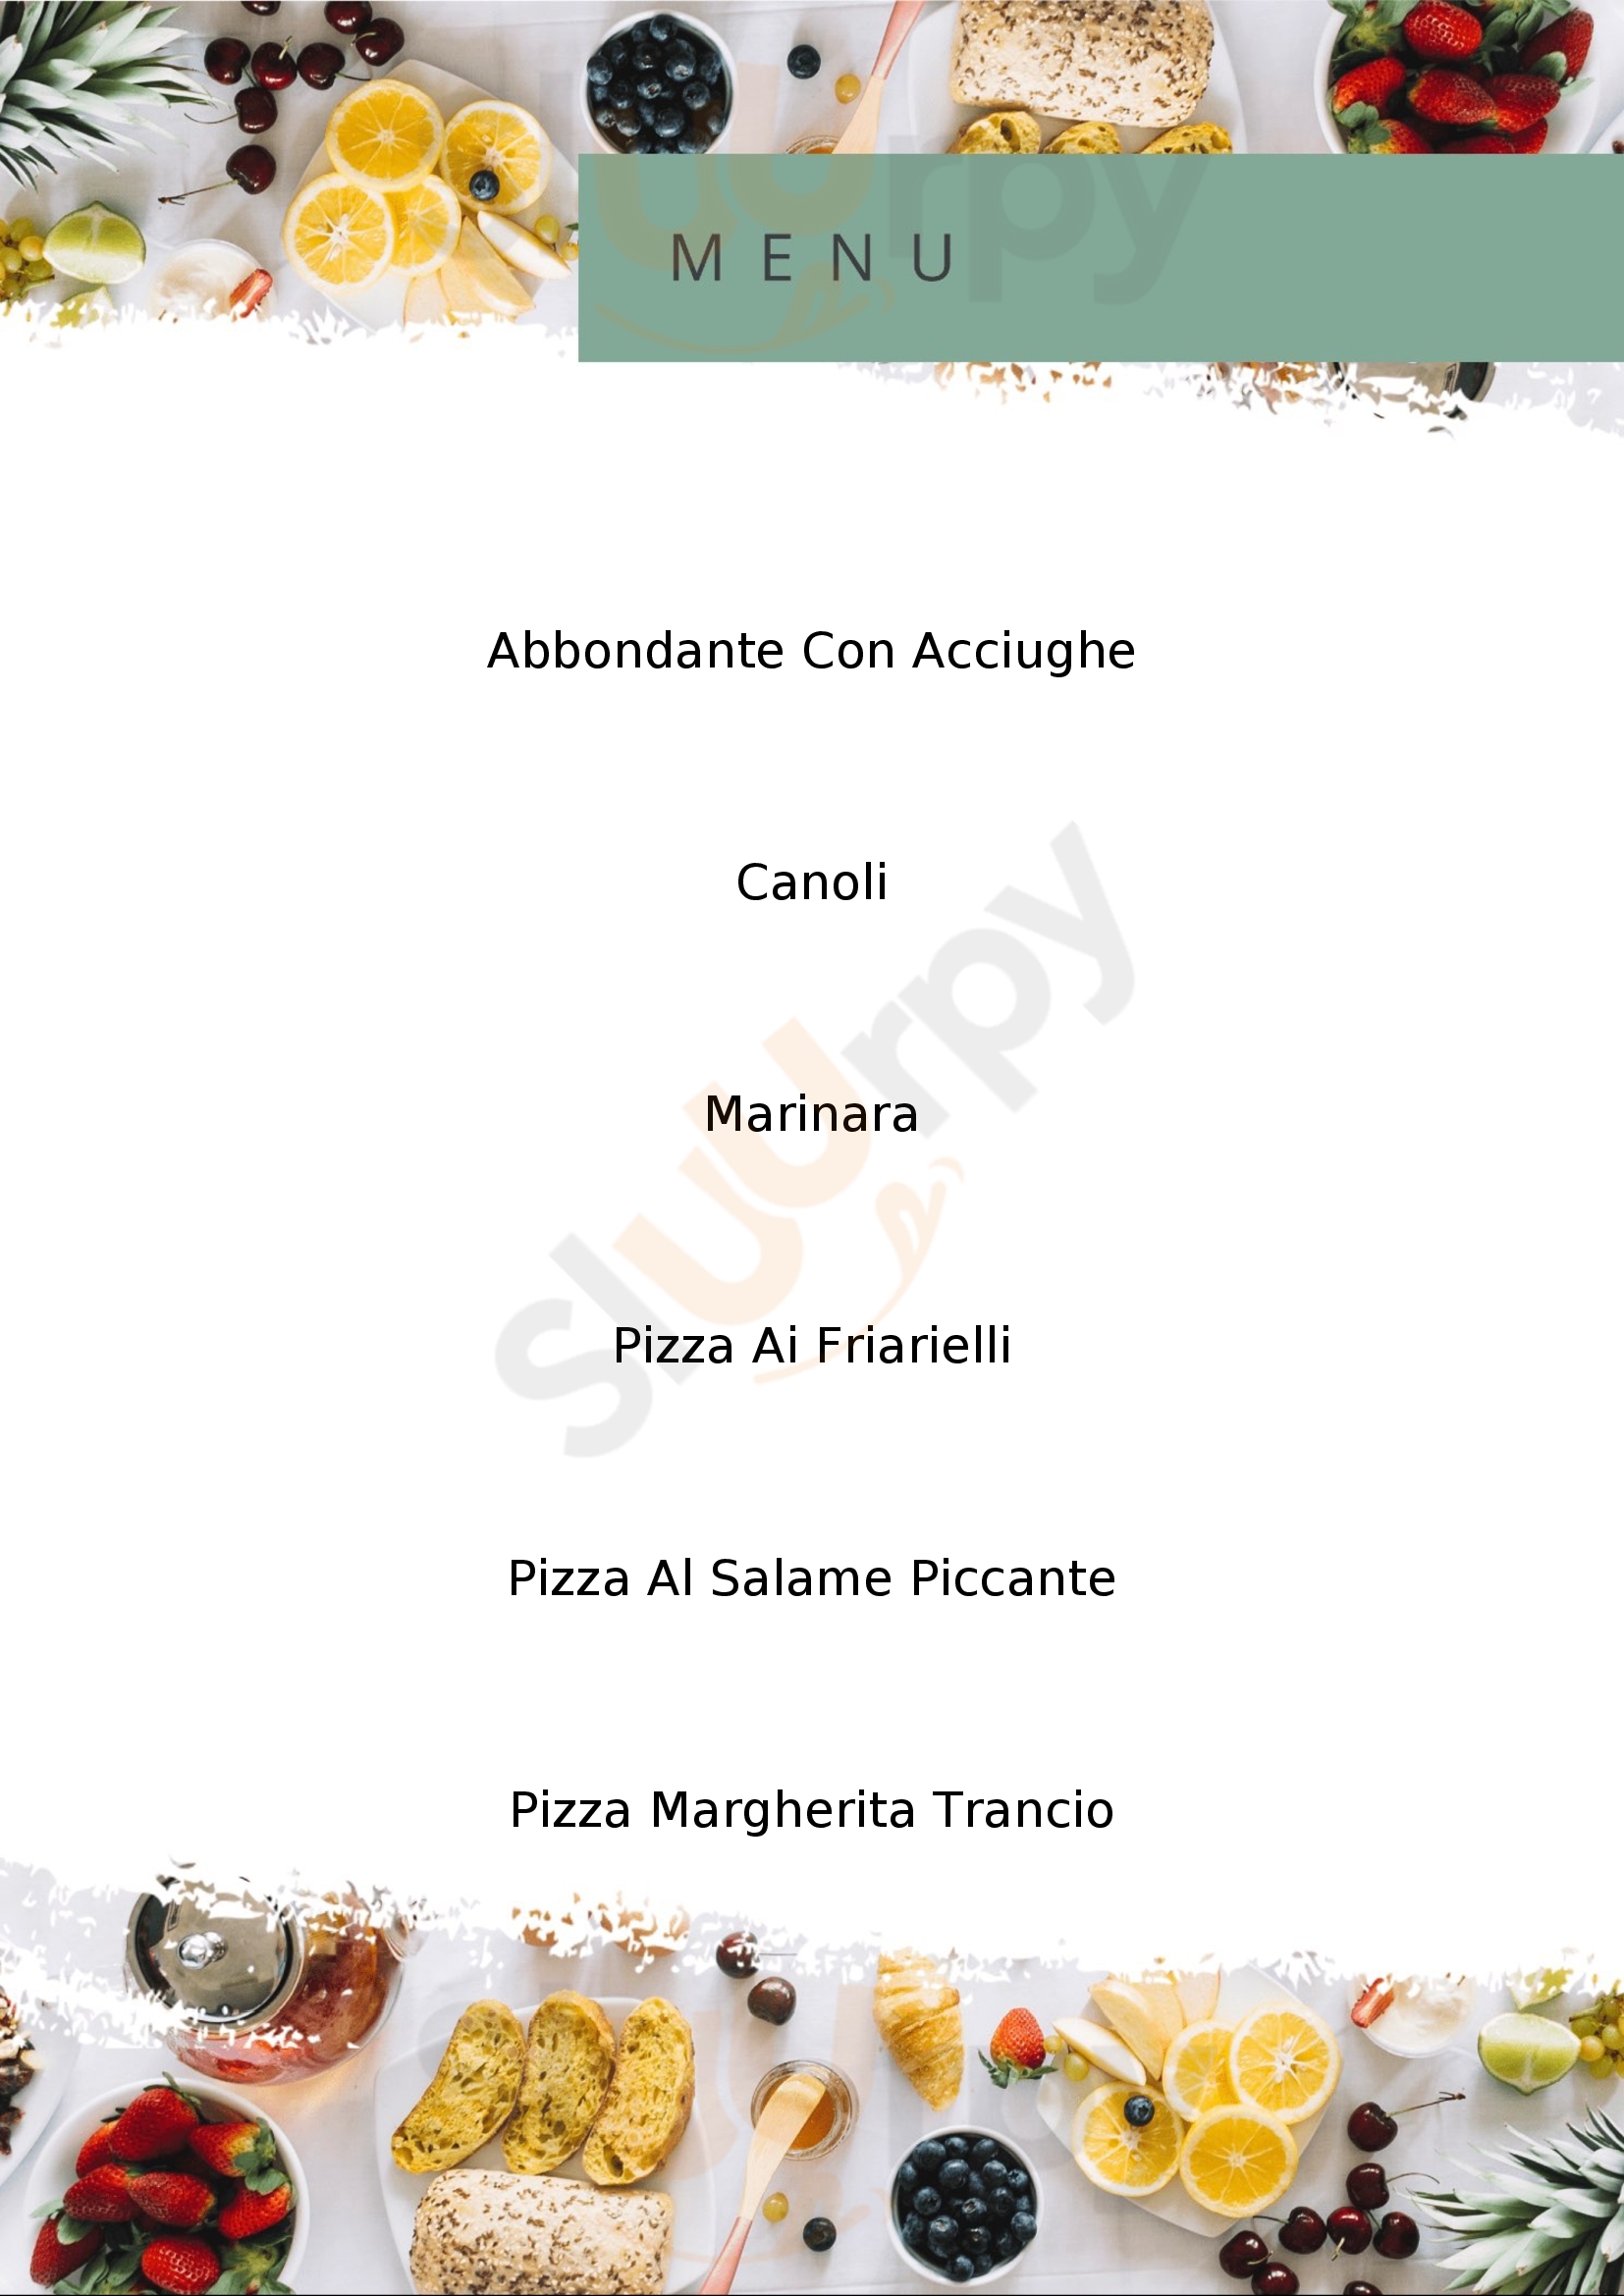 Pizzeria dallo Zio Milano menù 1 pagina